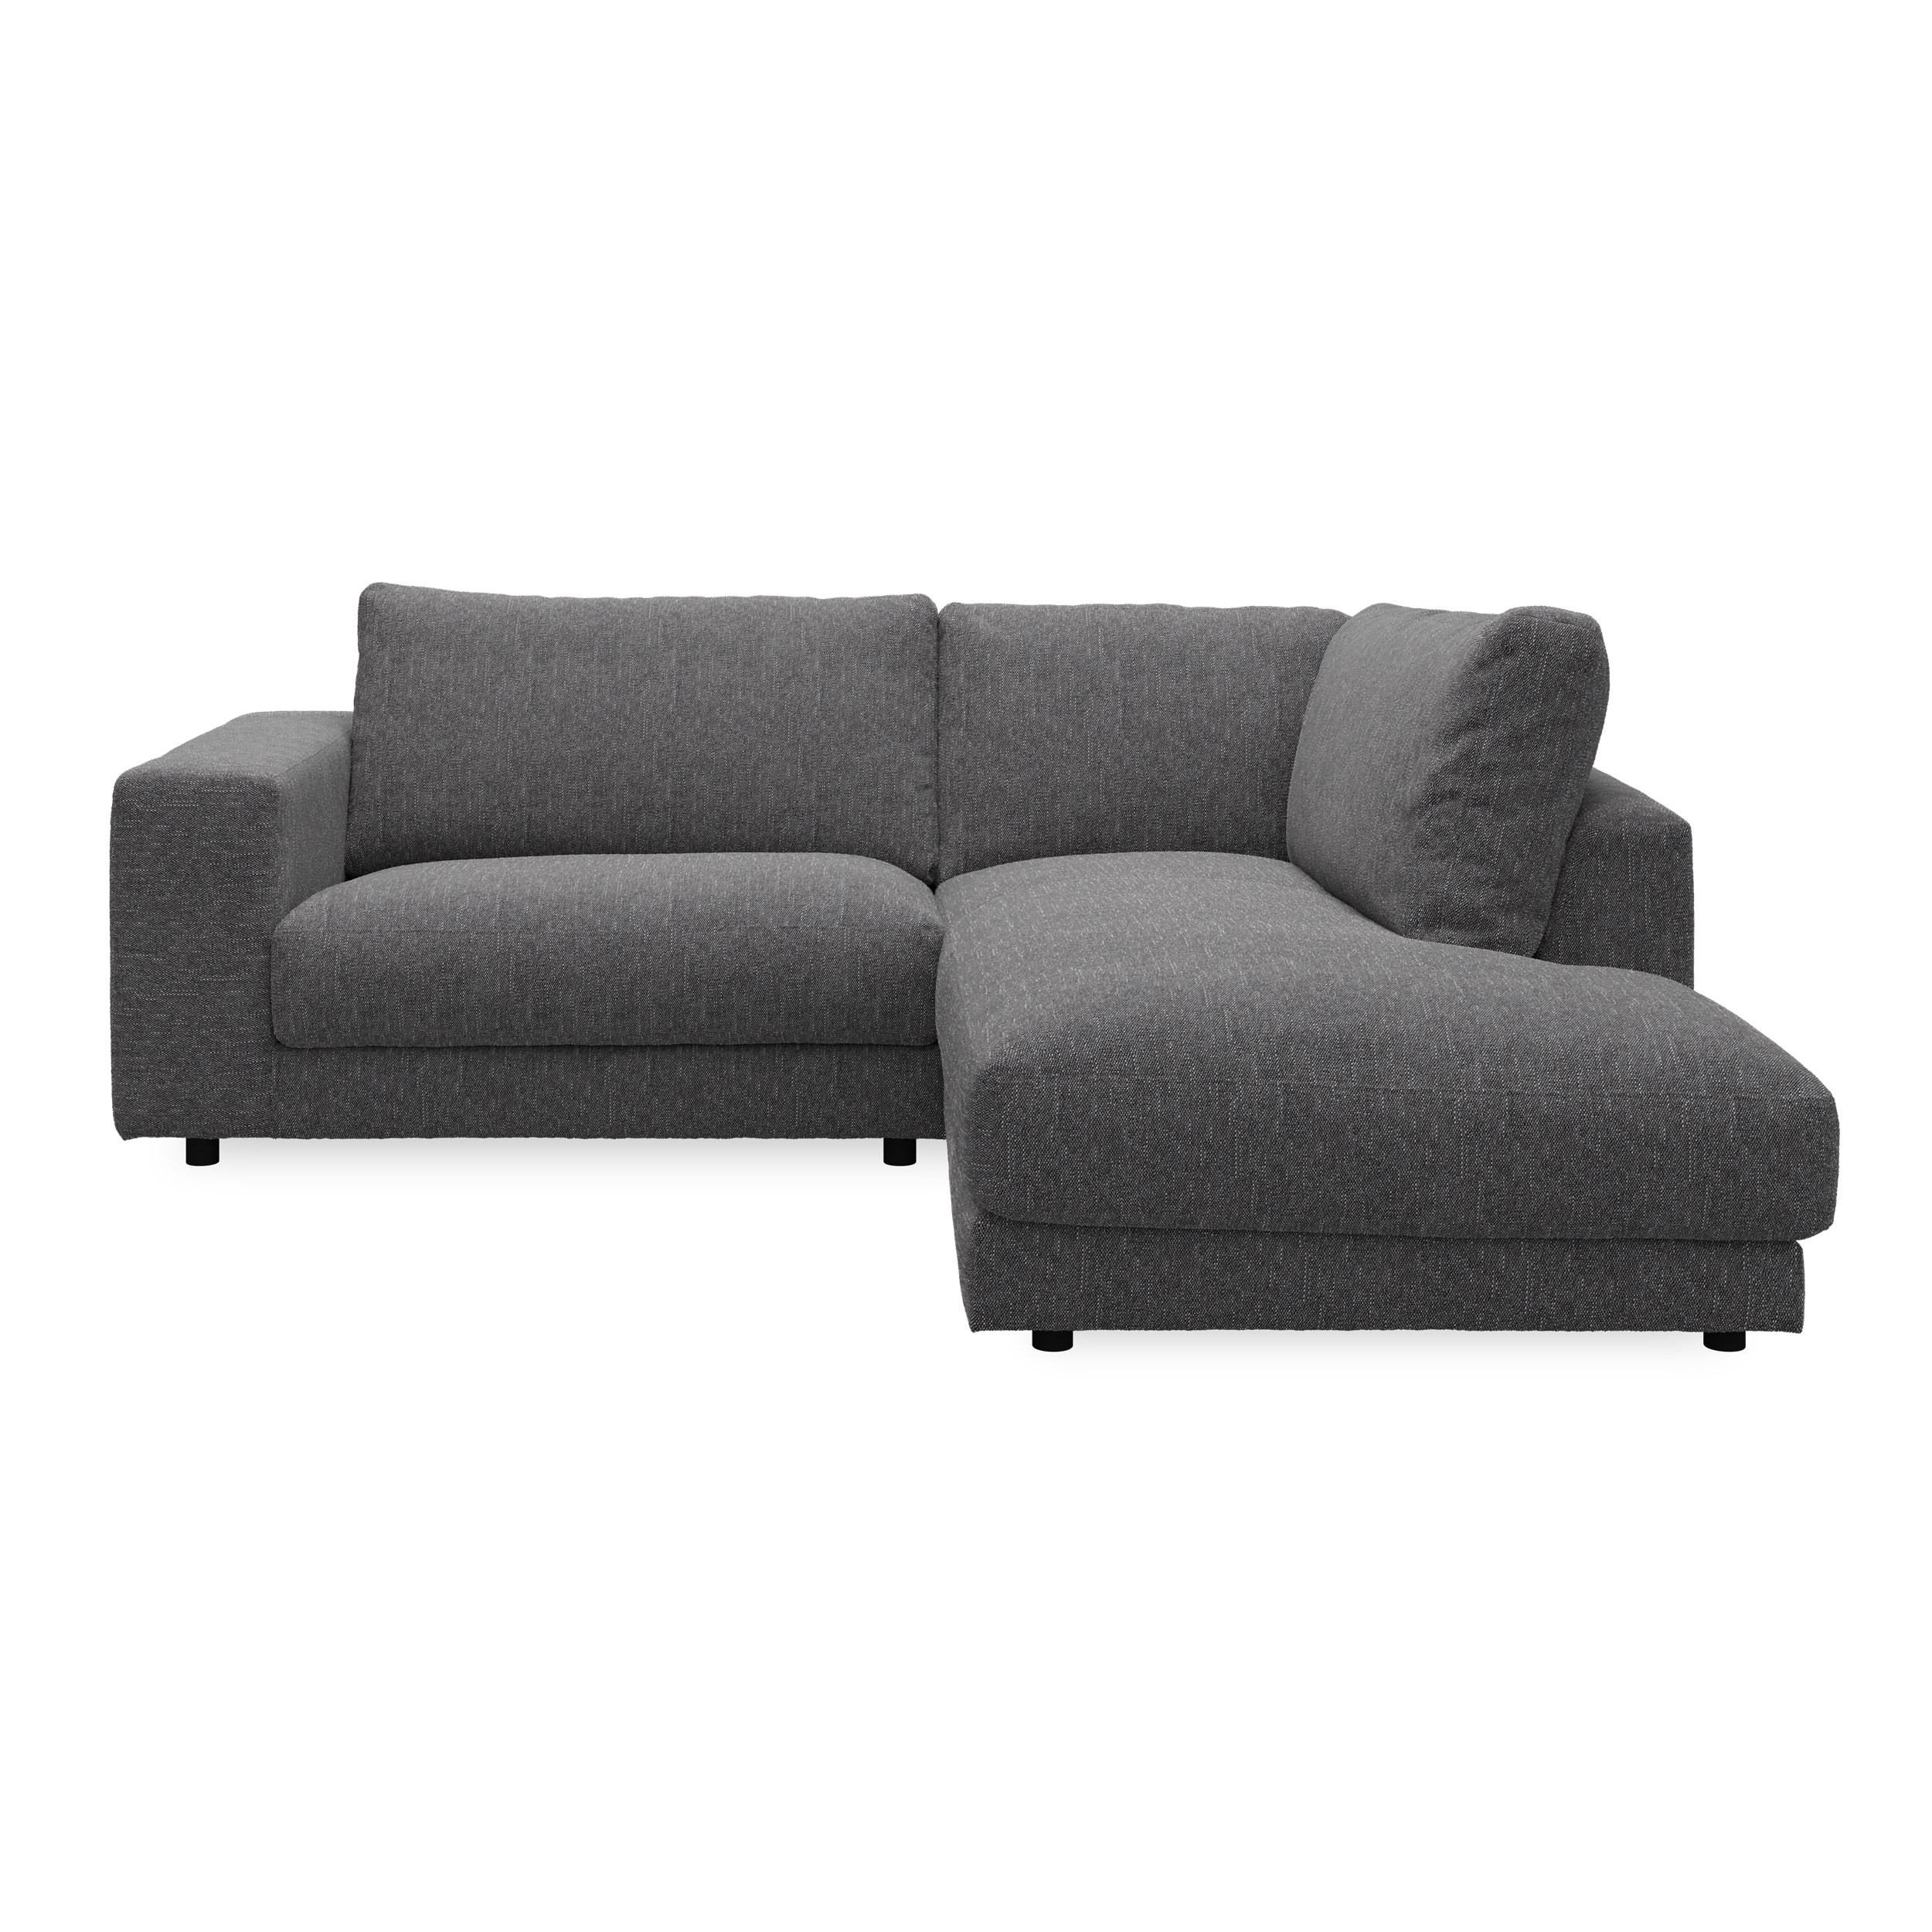 Bennent högervänd soffa med divan - Yelda Grey klädsel, ben i svart plast och S:skum/fib/din/sili R:Dun/skum